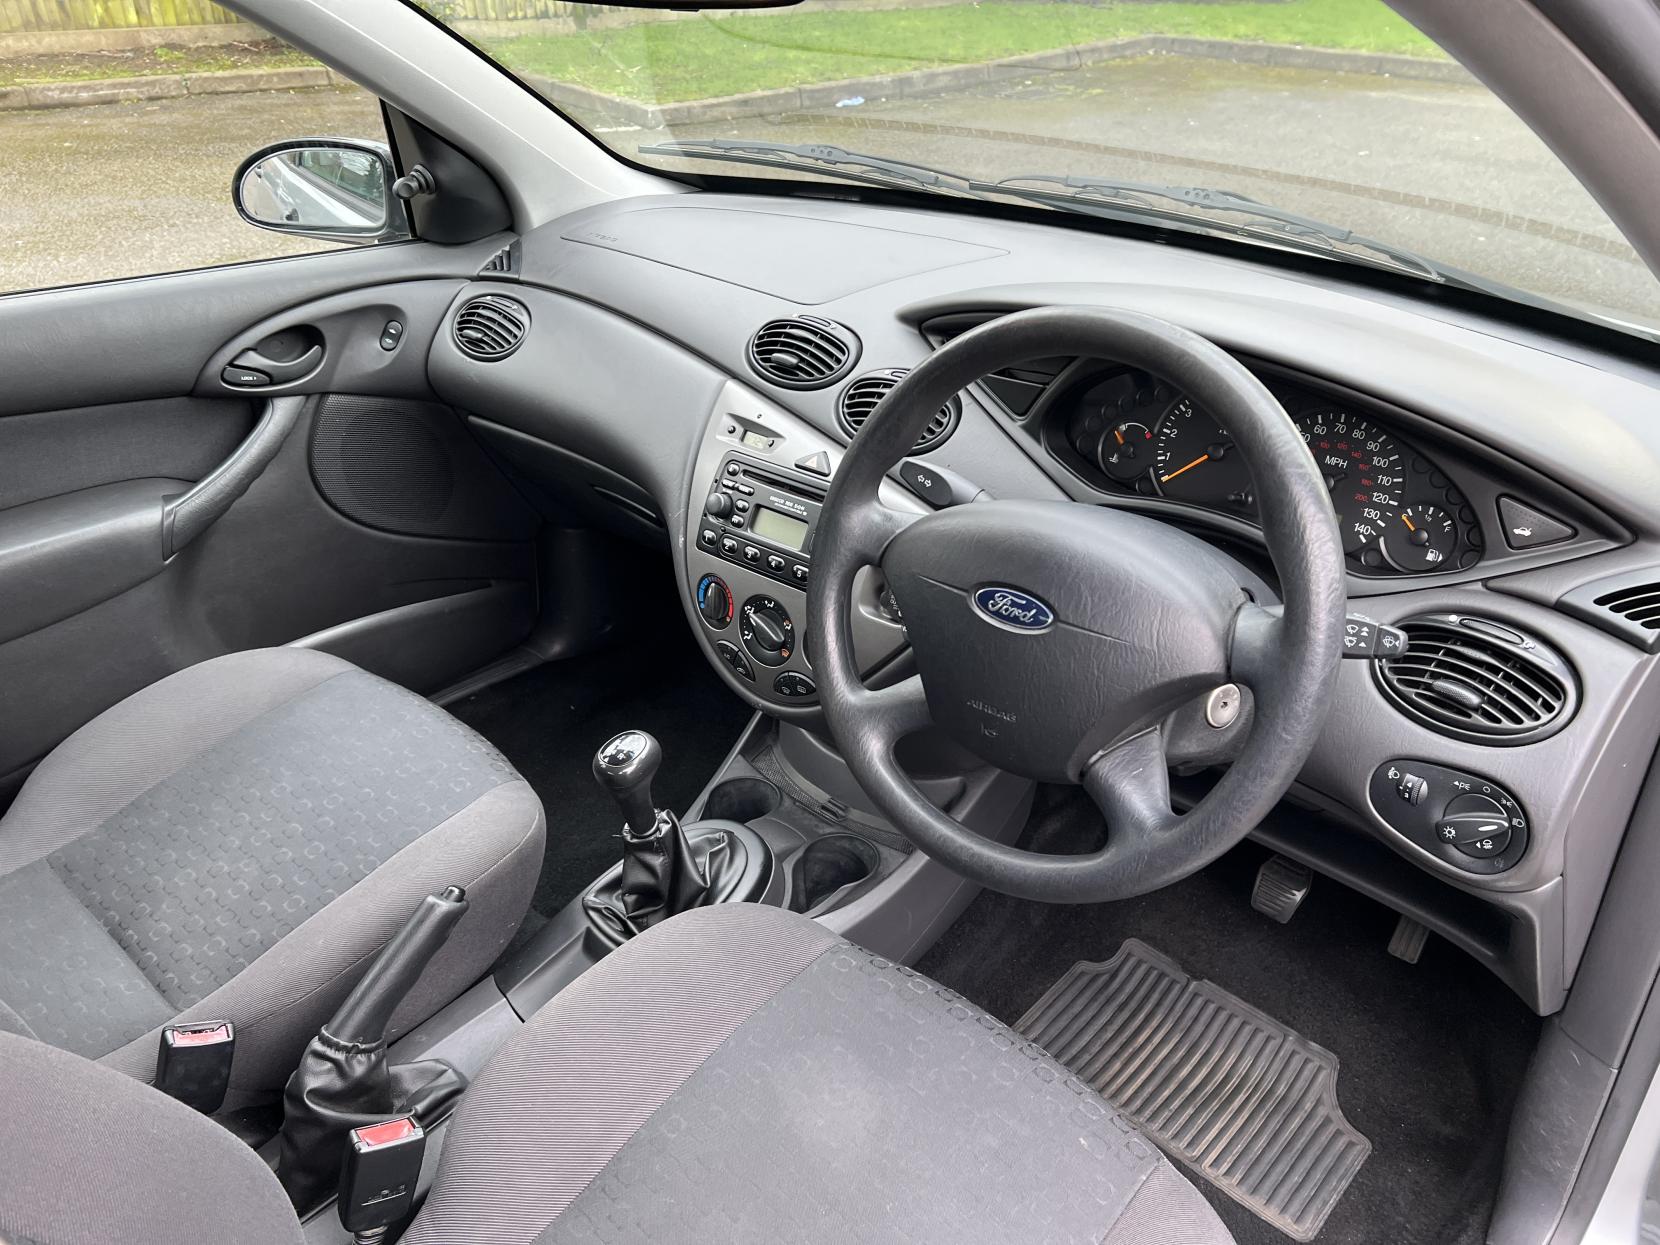 Ford Focus 1.6i 16v LX Hatchback 5dr Petrol Manual (163 g/km, 99 bhp)